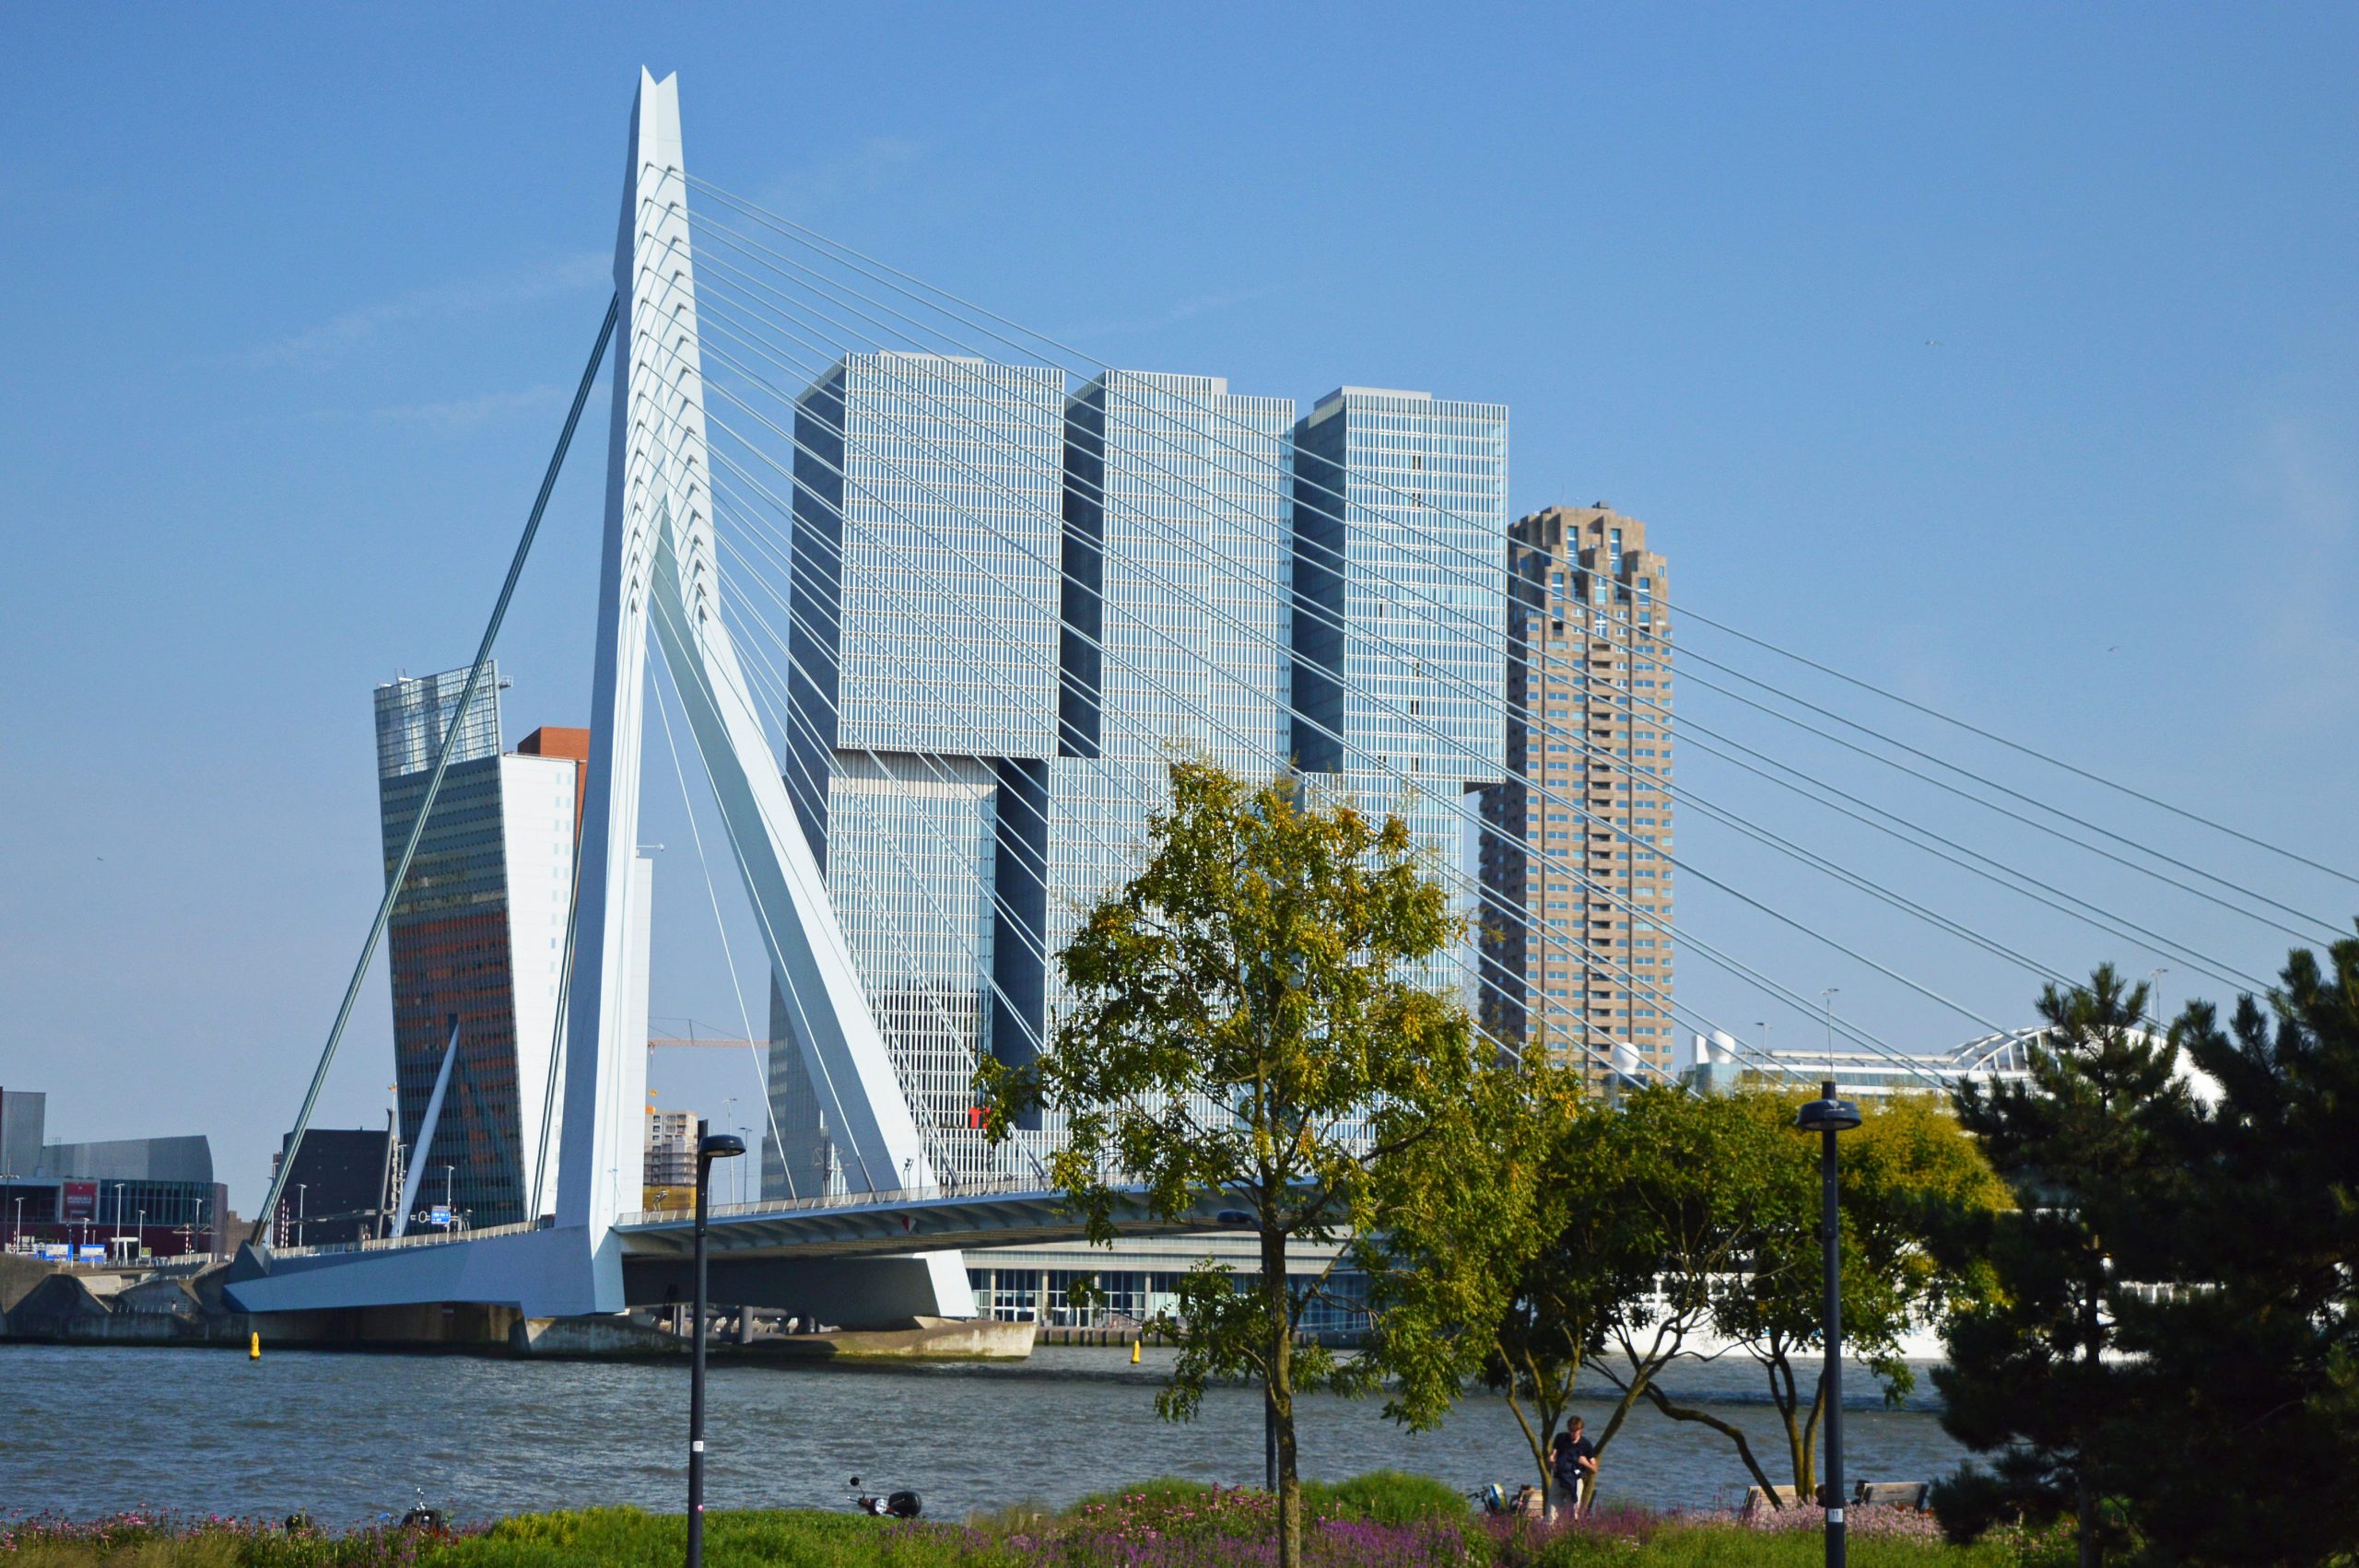 Rotterdam wallpaper, netherlands, nederland, holland, bridge, architecture